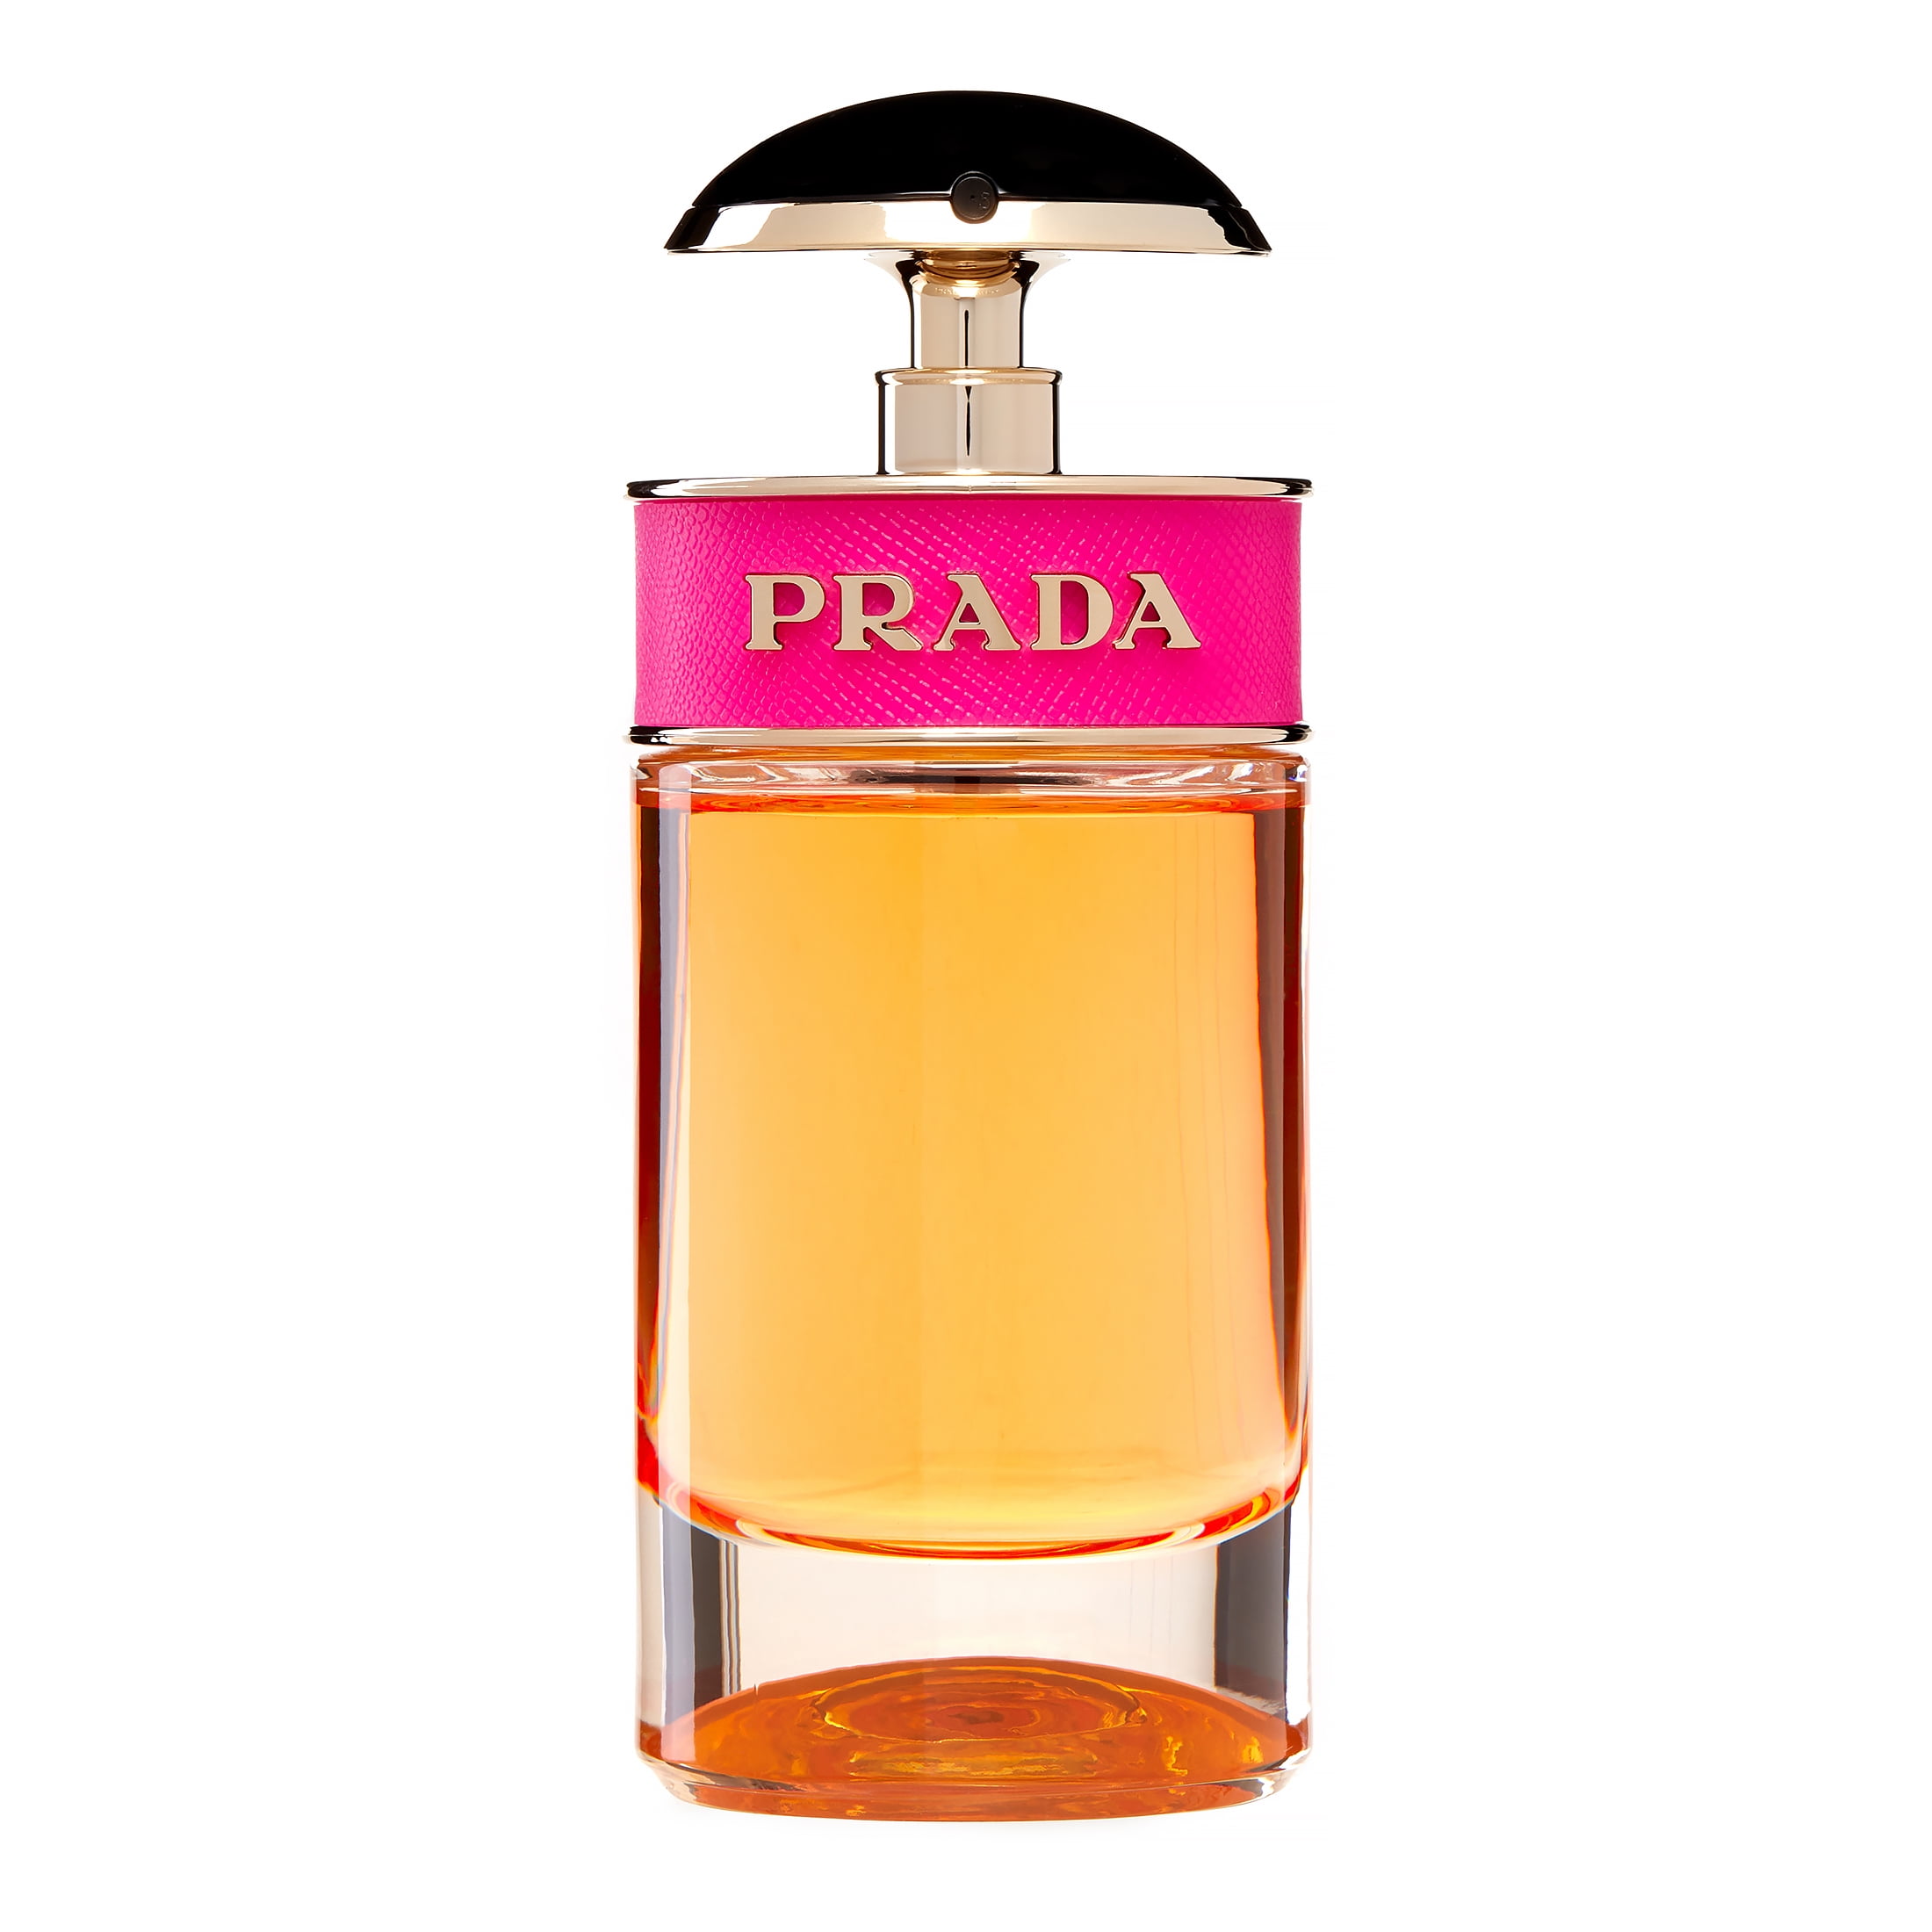 1.7-Oz Prada Candy by Prada Eau De Parfum Spray for Women Perfume $50 + Free Shipping